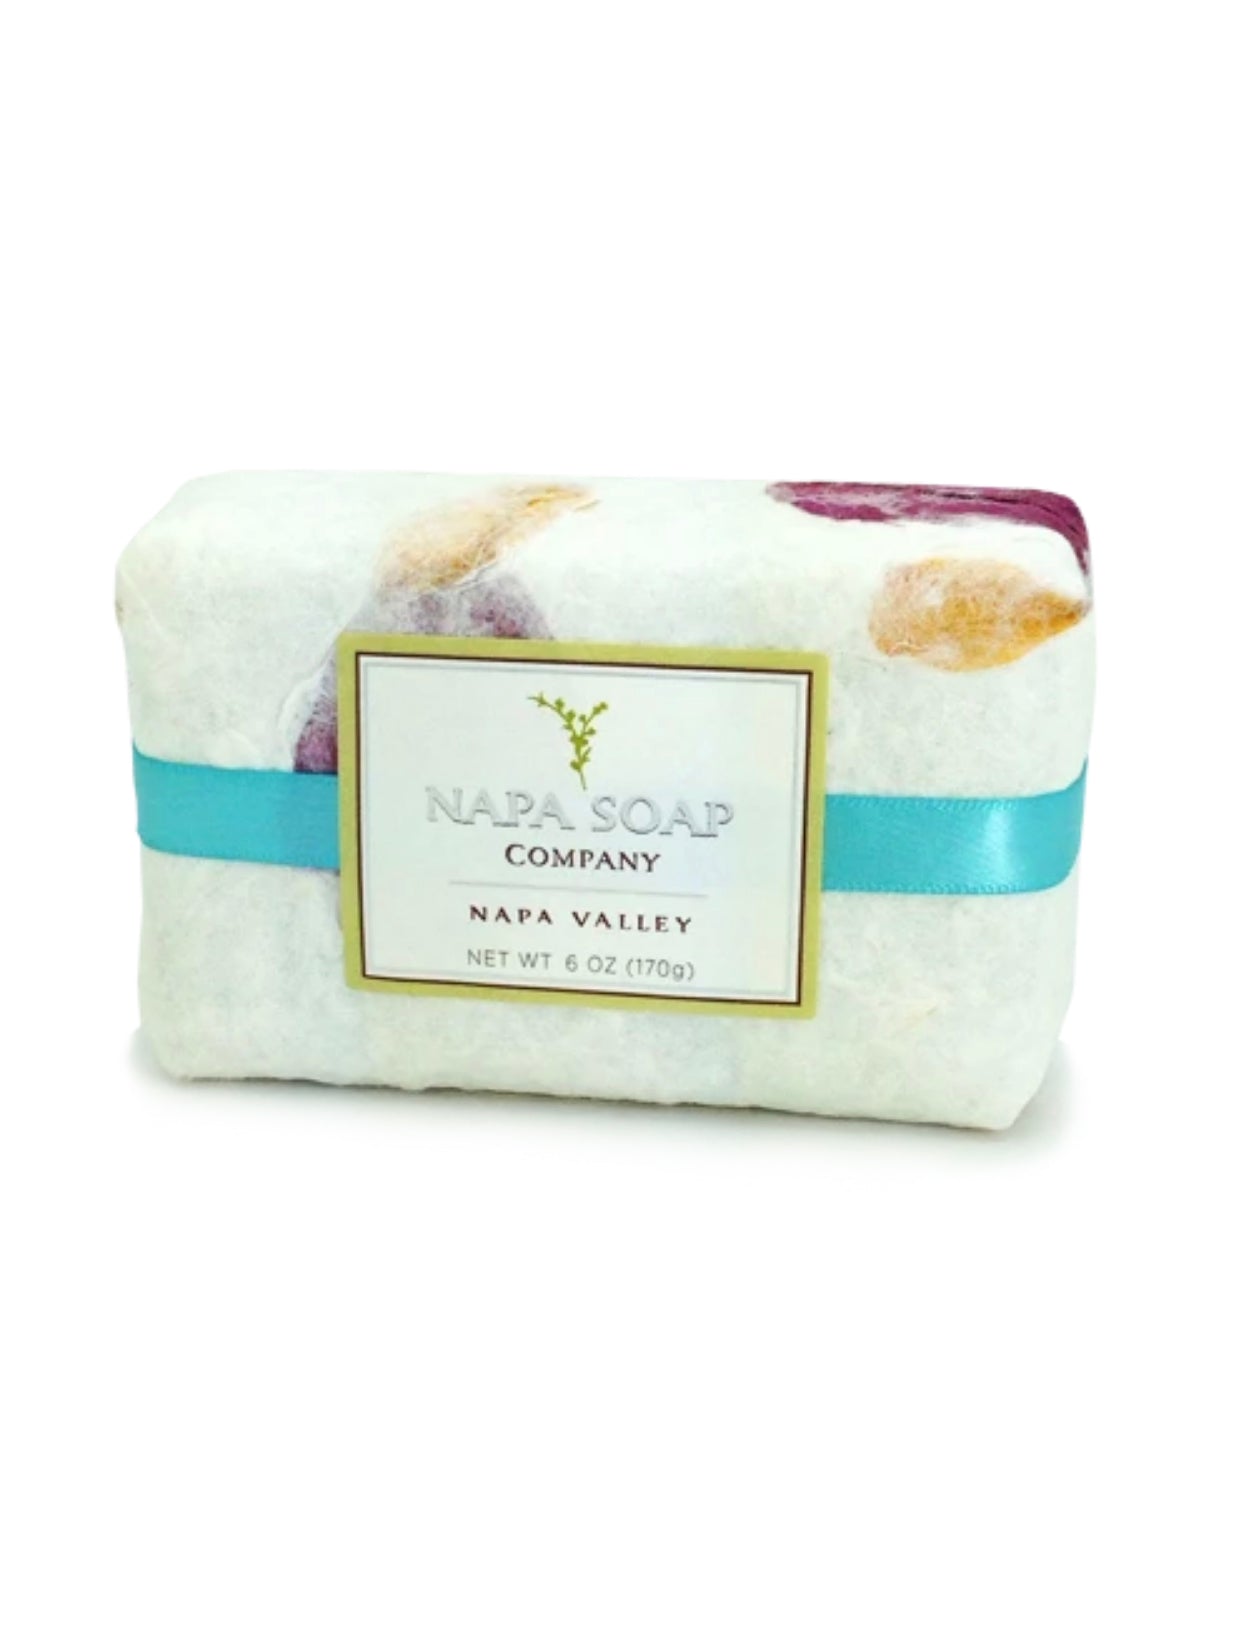 Napa Soap Company All Natural Ocean Potion Soap Bar